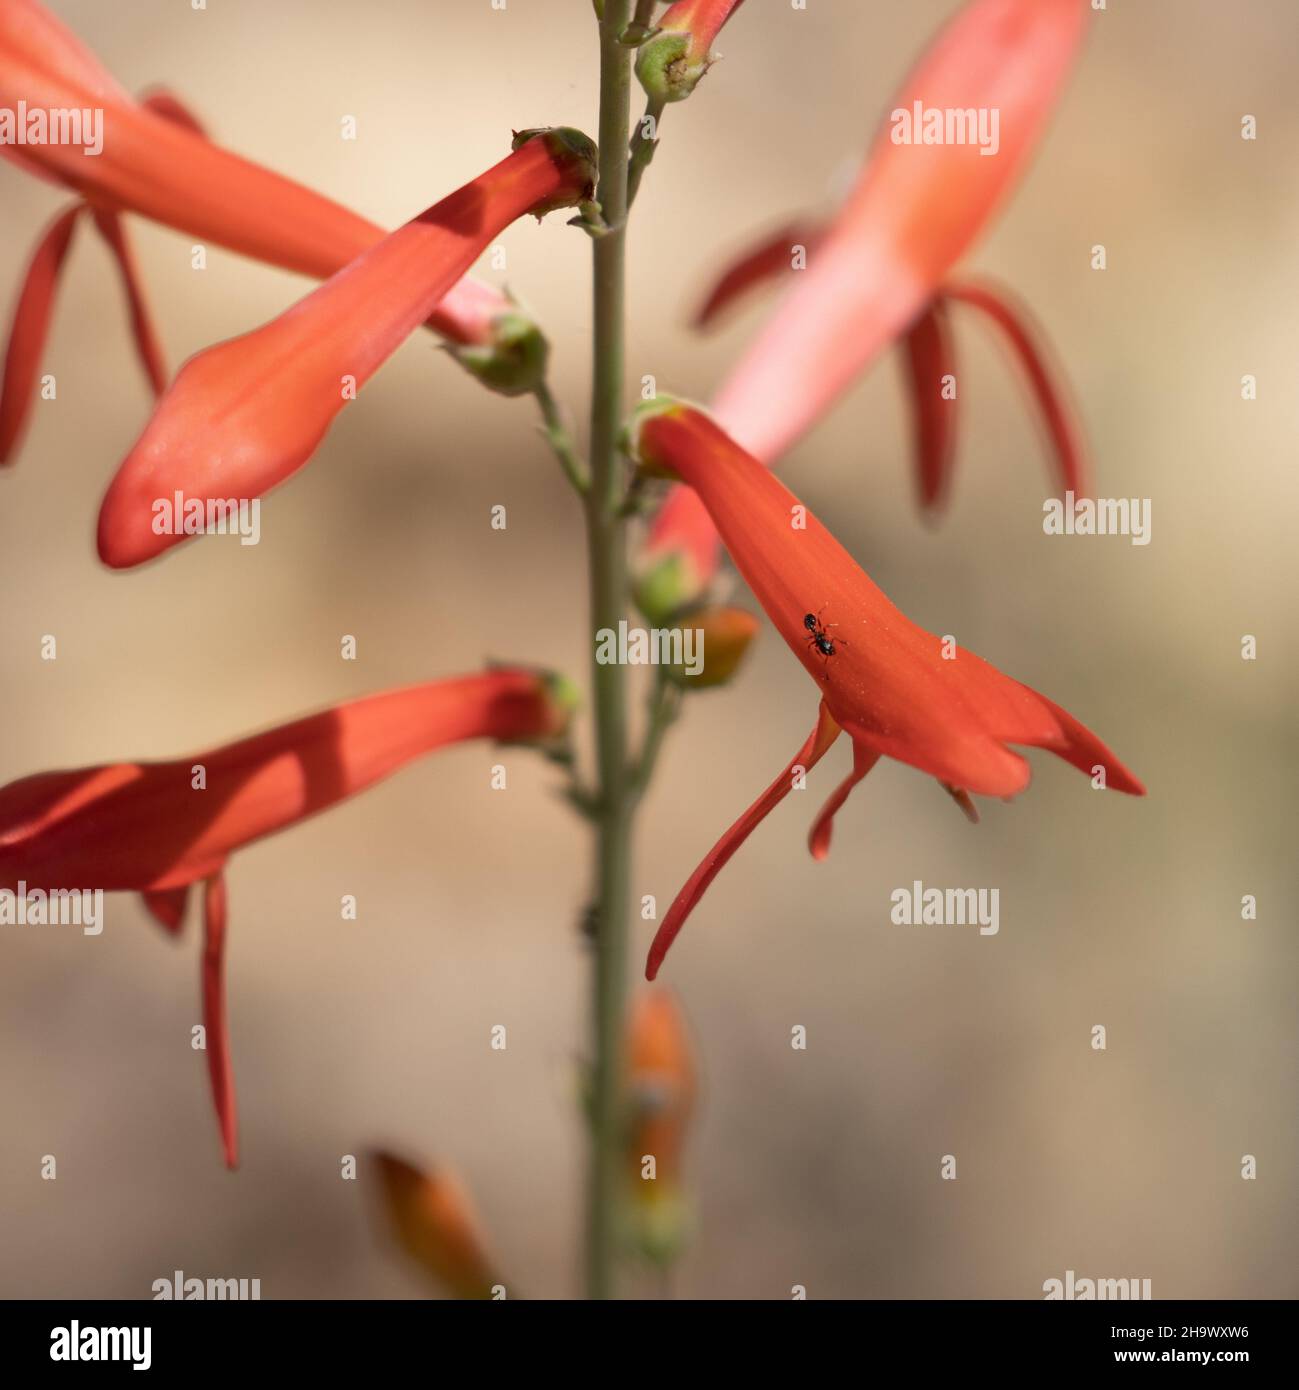 Race rouge à fleurs de San Gabriel Nearthread, Penstemon Labrosus, Plantaginaceae, herbe vivace indigène dans les montagnes de San Bernardino, été. Banque D'Images